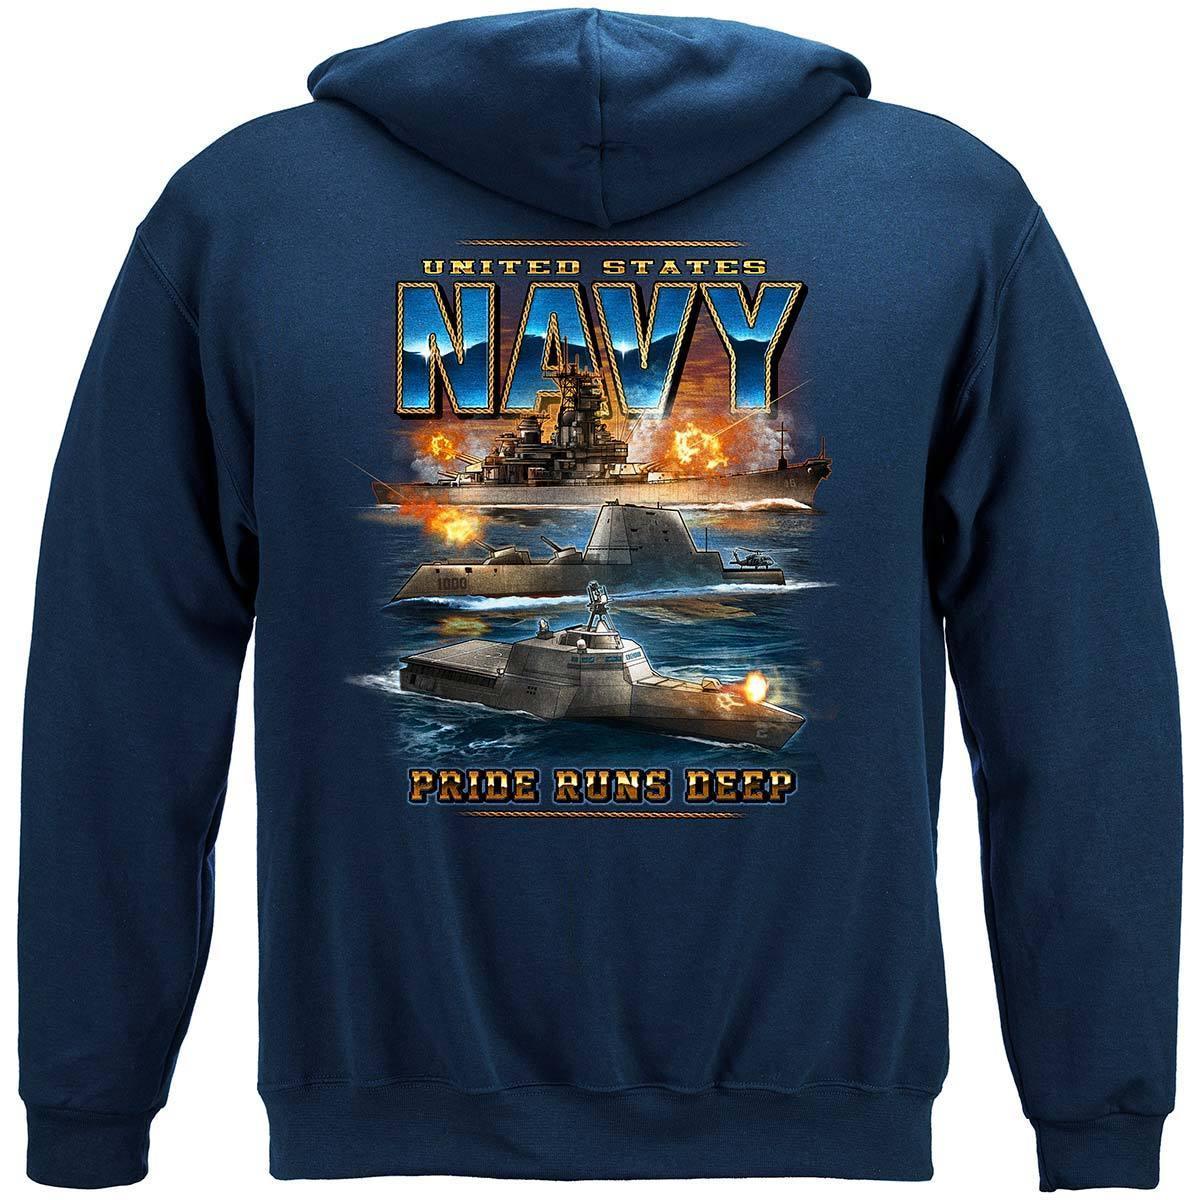 Navy Pride Runs Deep Hoodie - Military Republic